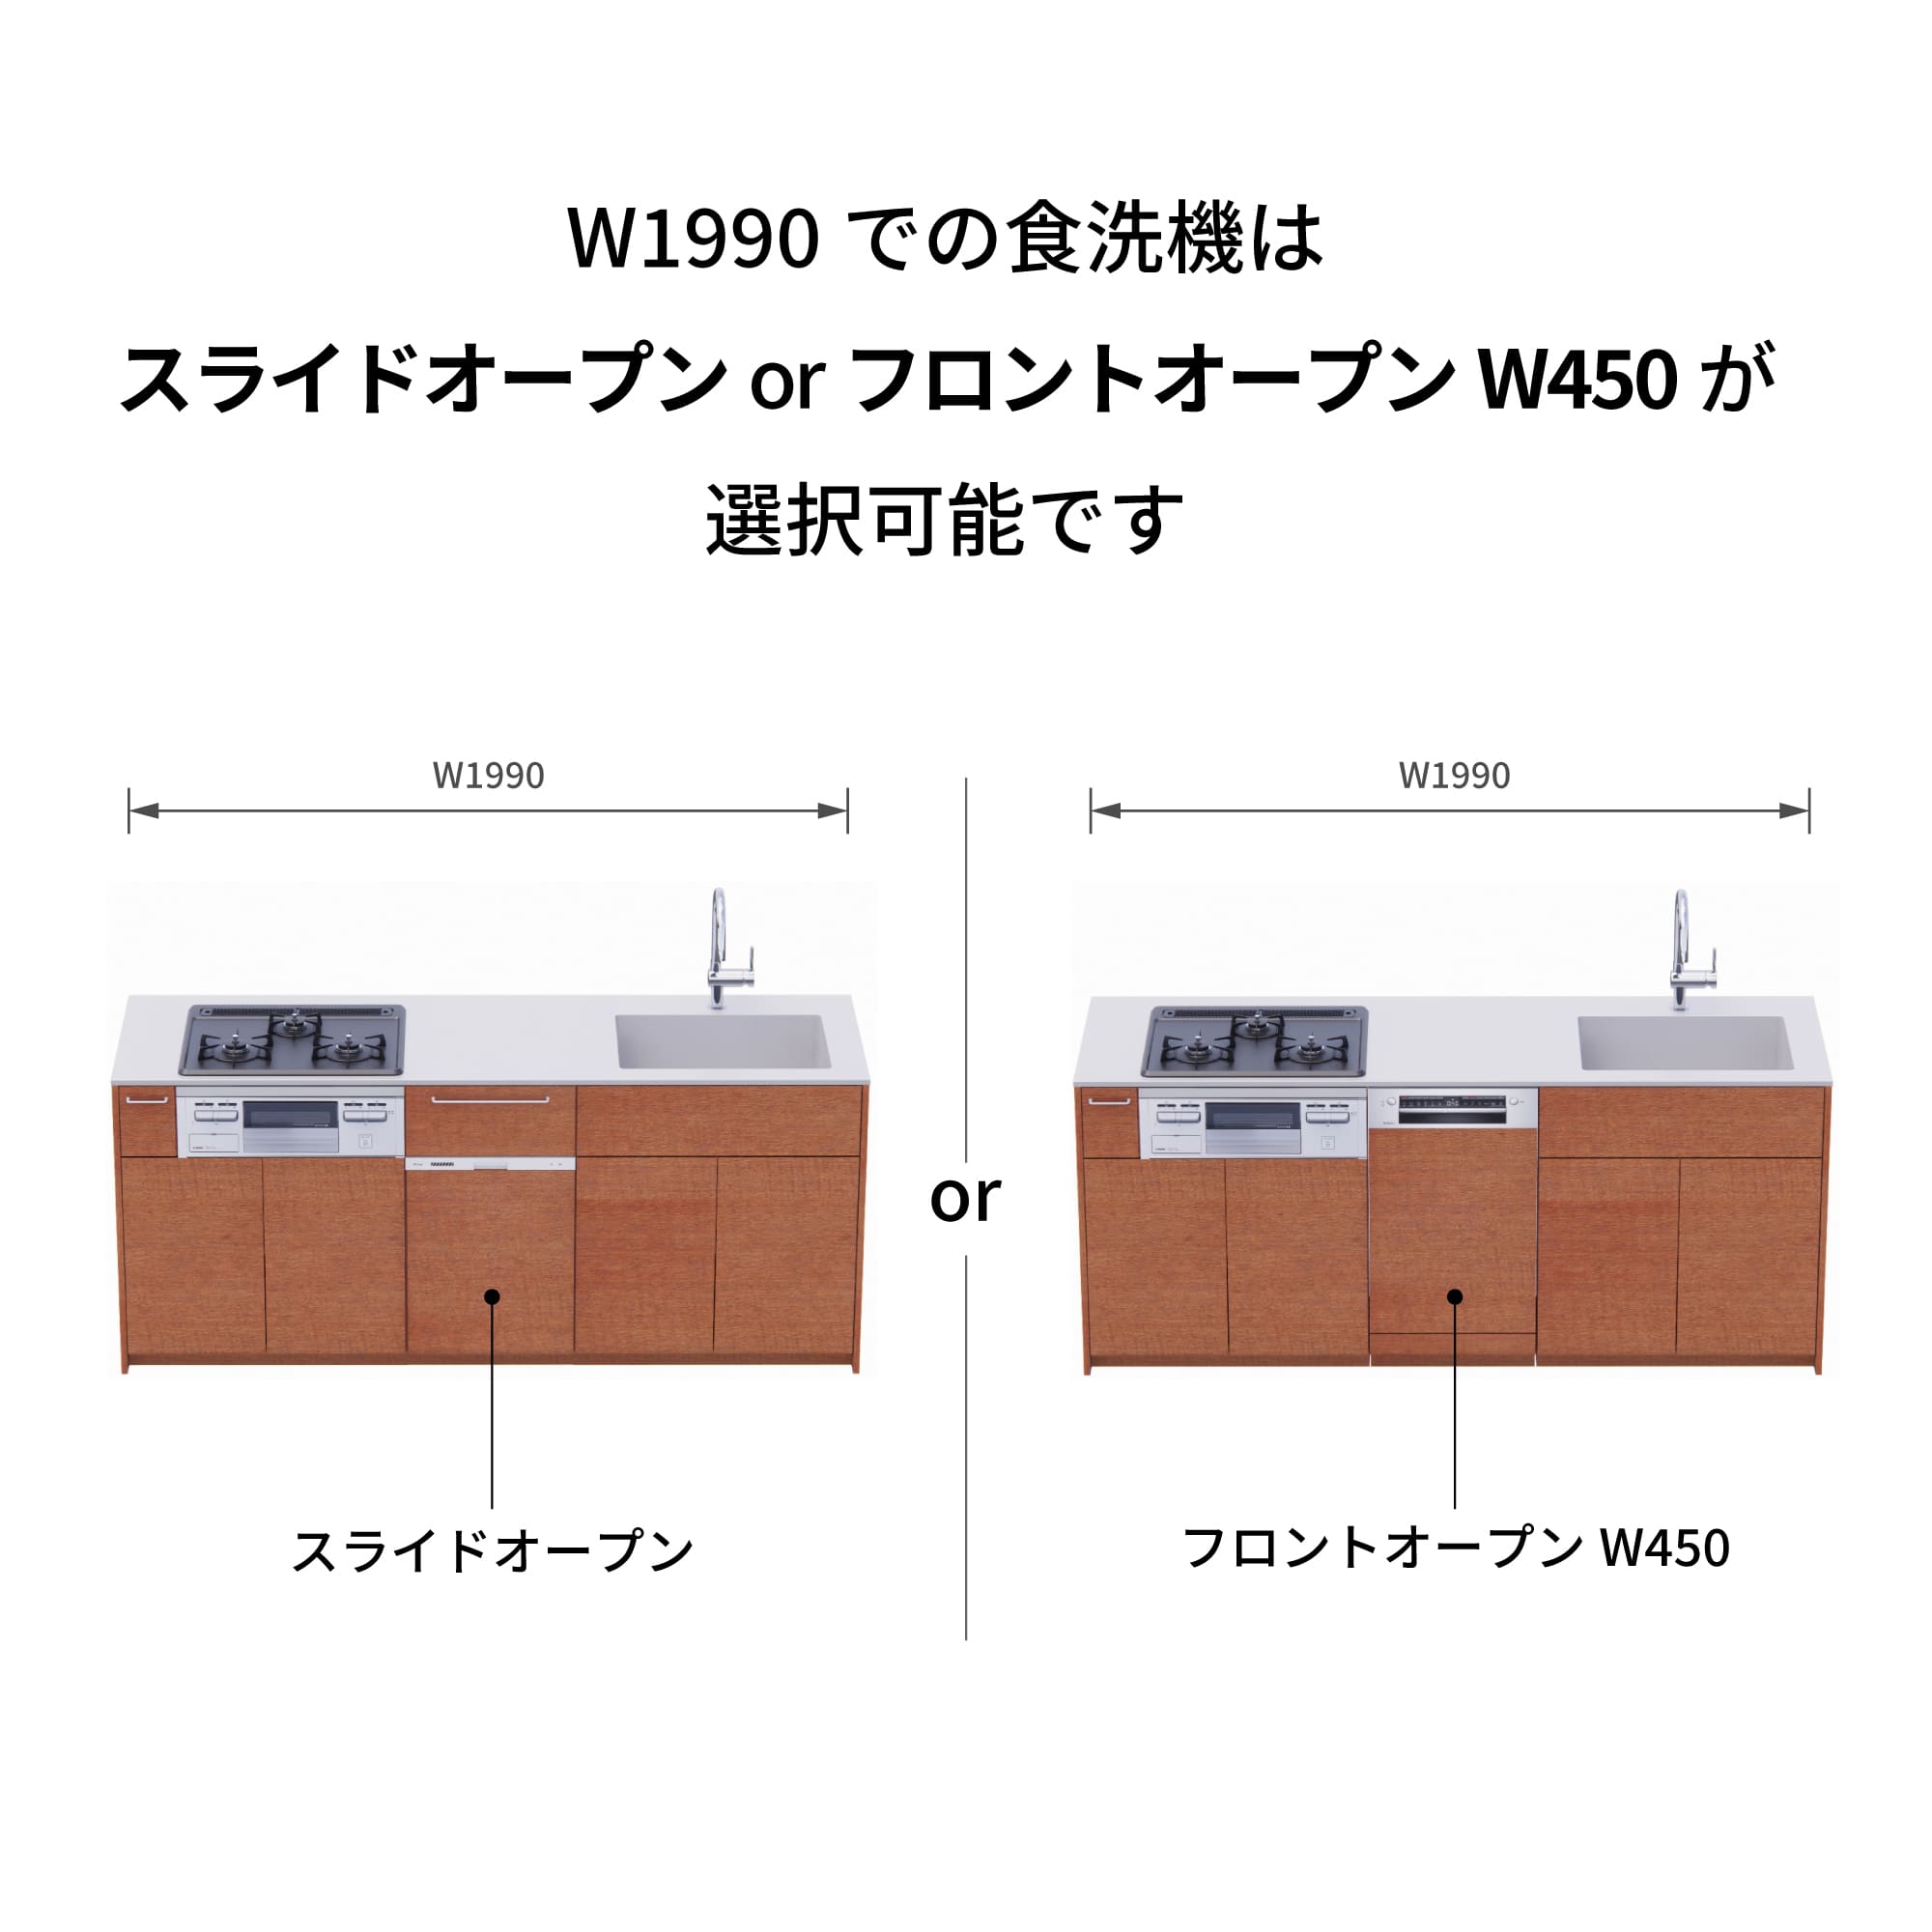 木製システムキッチン 壁付け型 W1990・コンロあり / オーブンなし / 食洗機あり KB-KC022-15-G183 W1990はスライドオープンとフロントオープン450が選択可能です